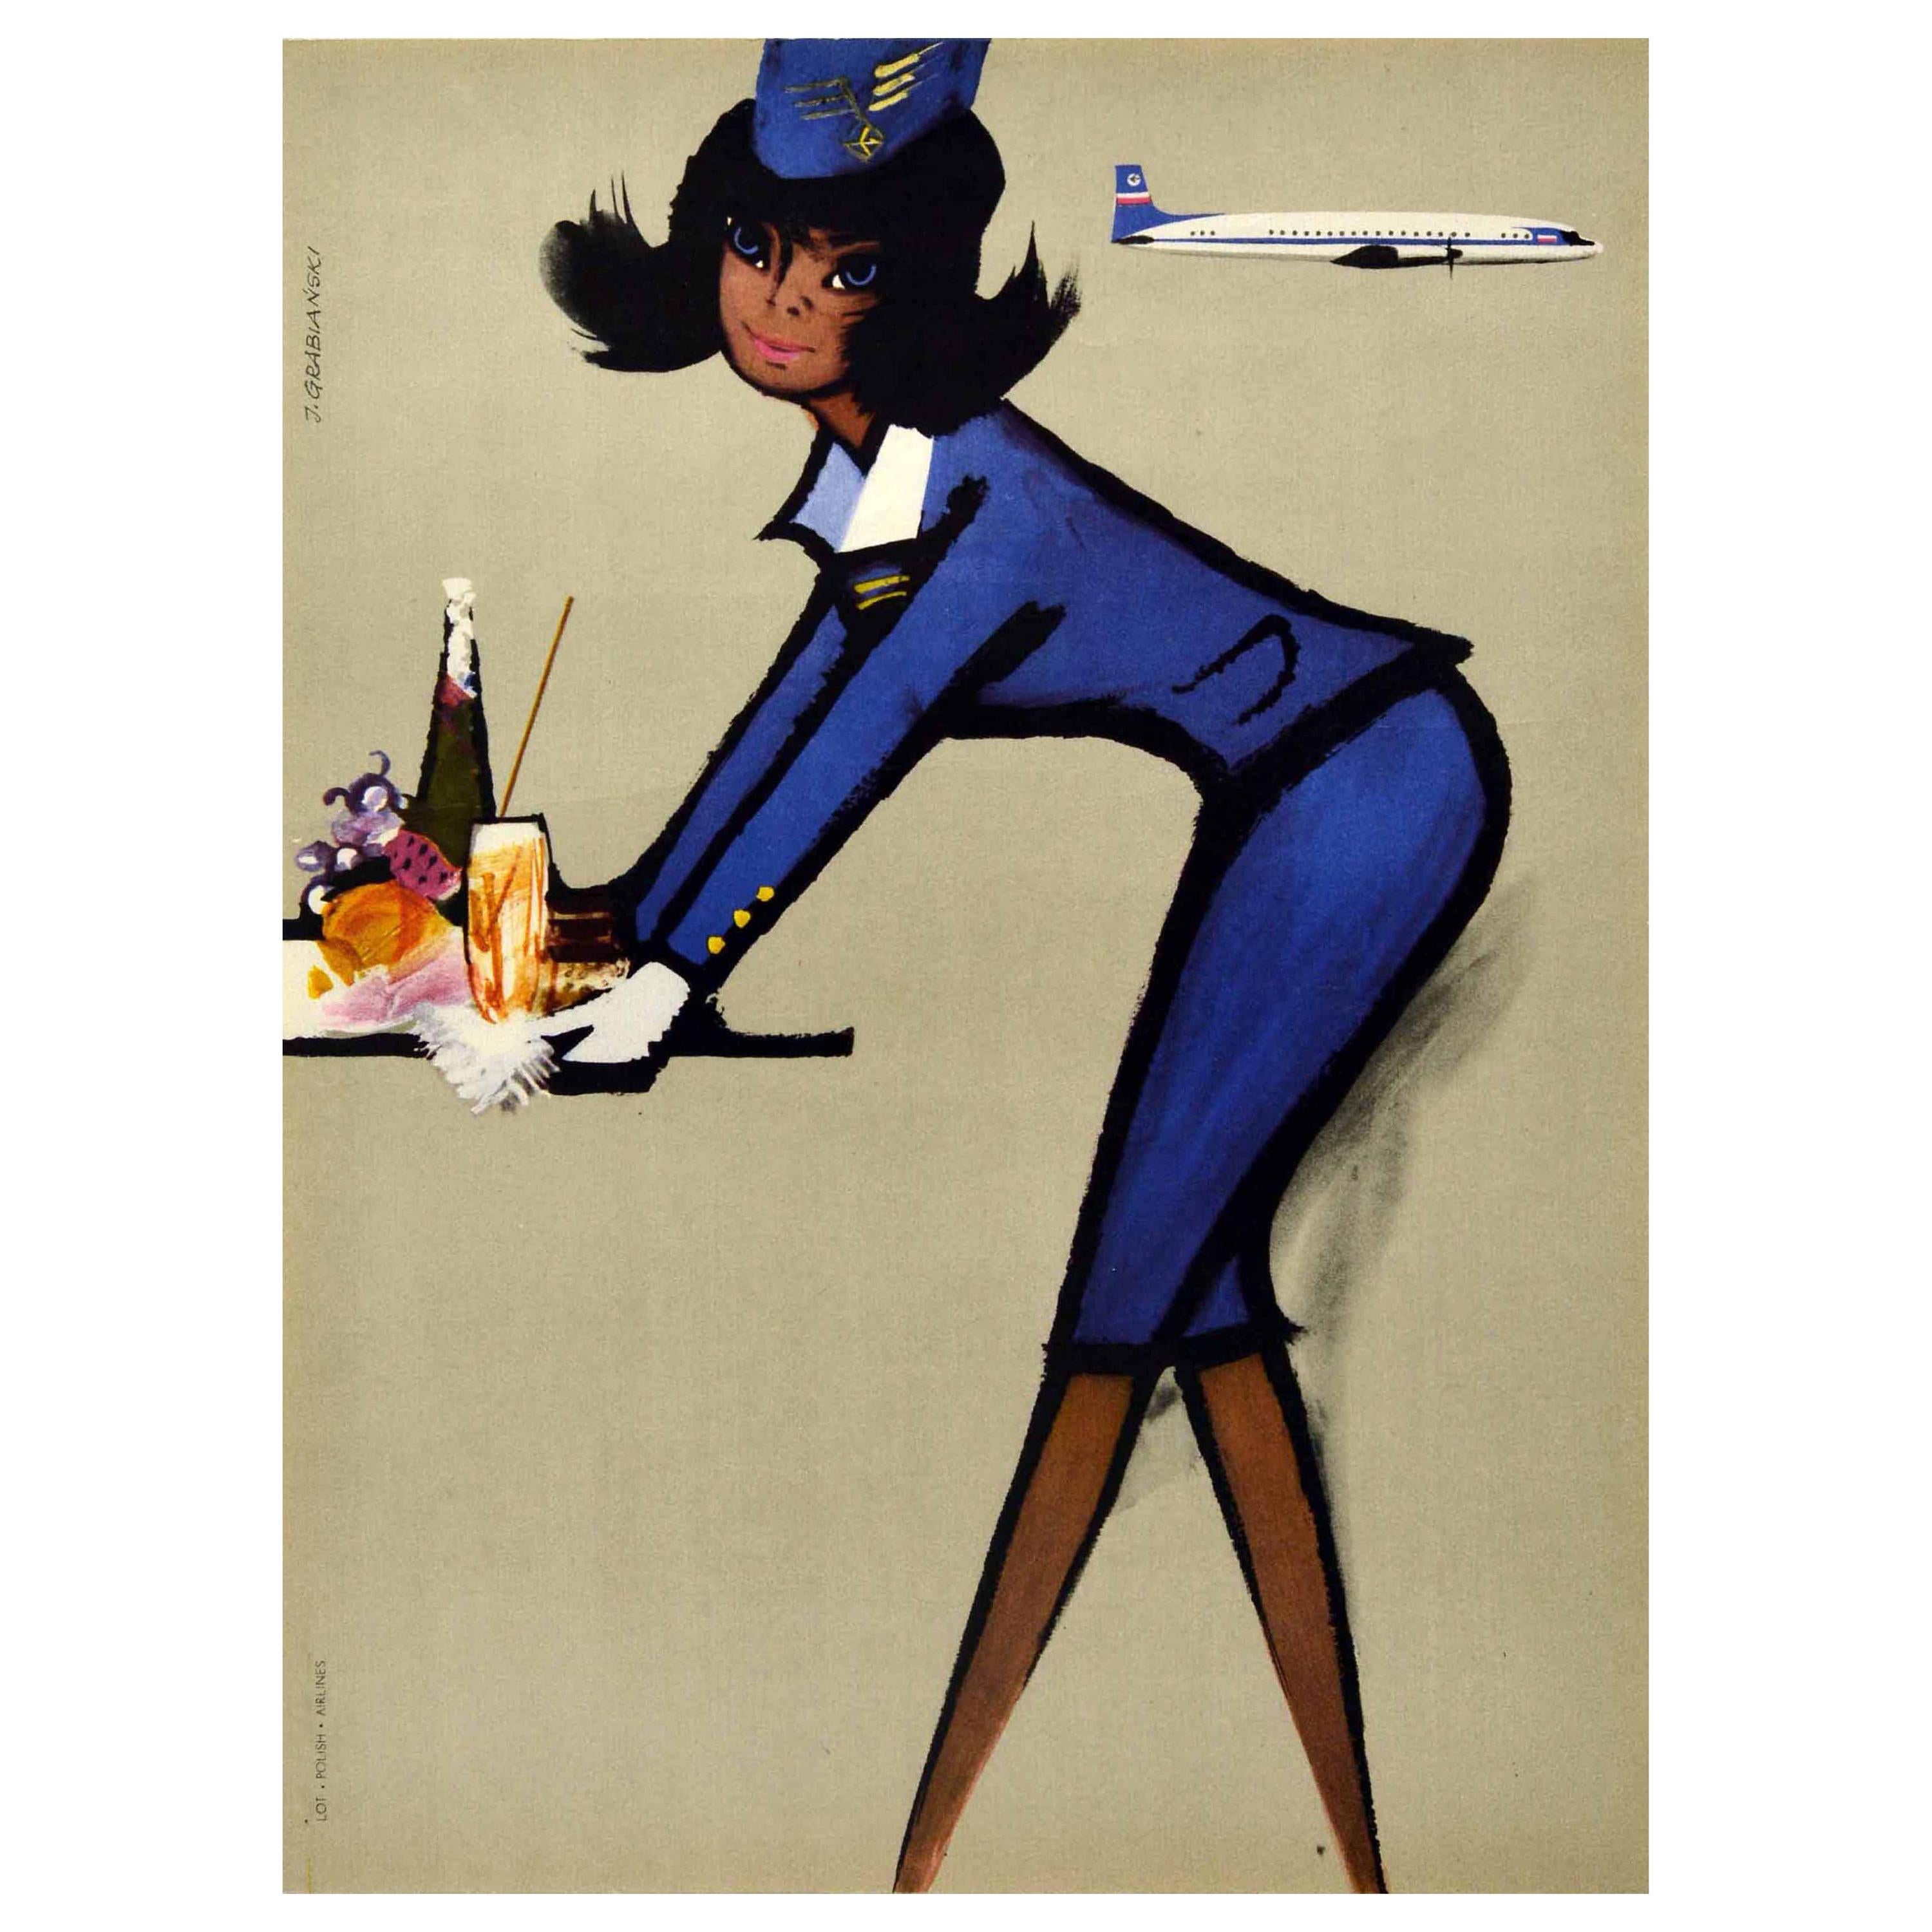 Affiche vintage originale, LOT Polish Airlines, Compagnies aériennes polonaises, Hôtesse de l'air